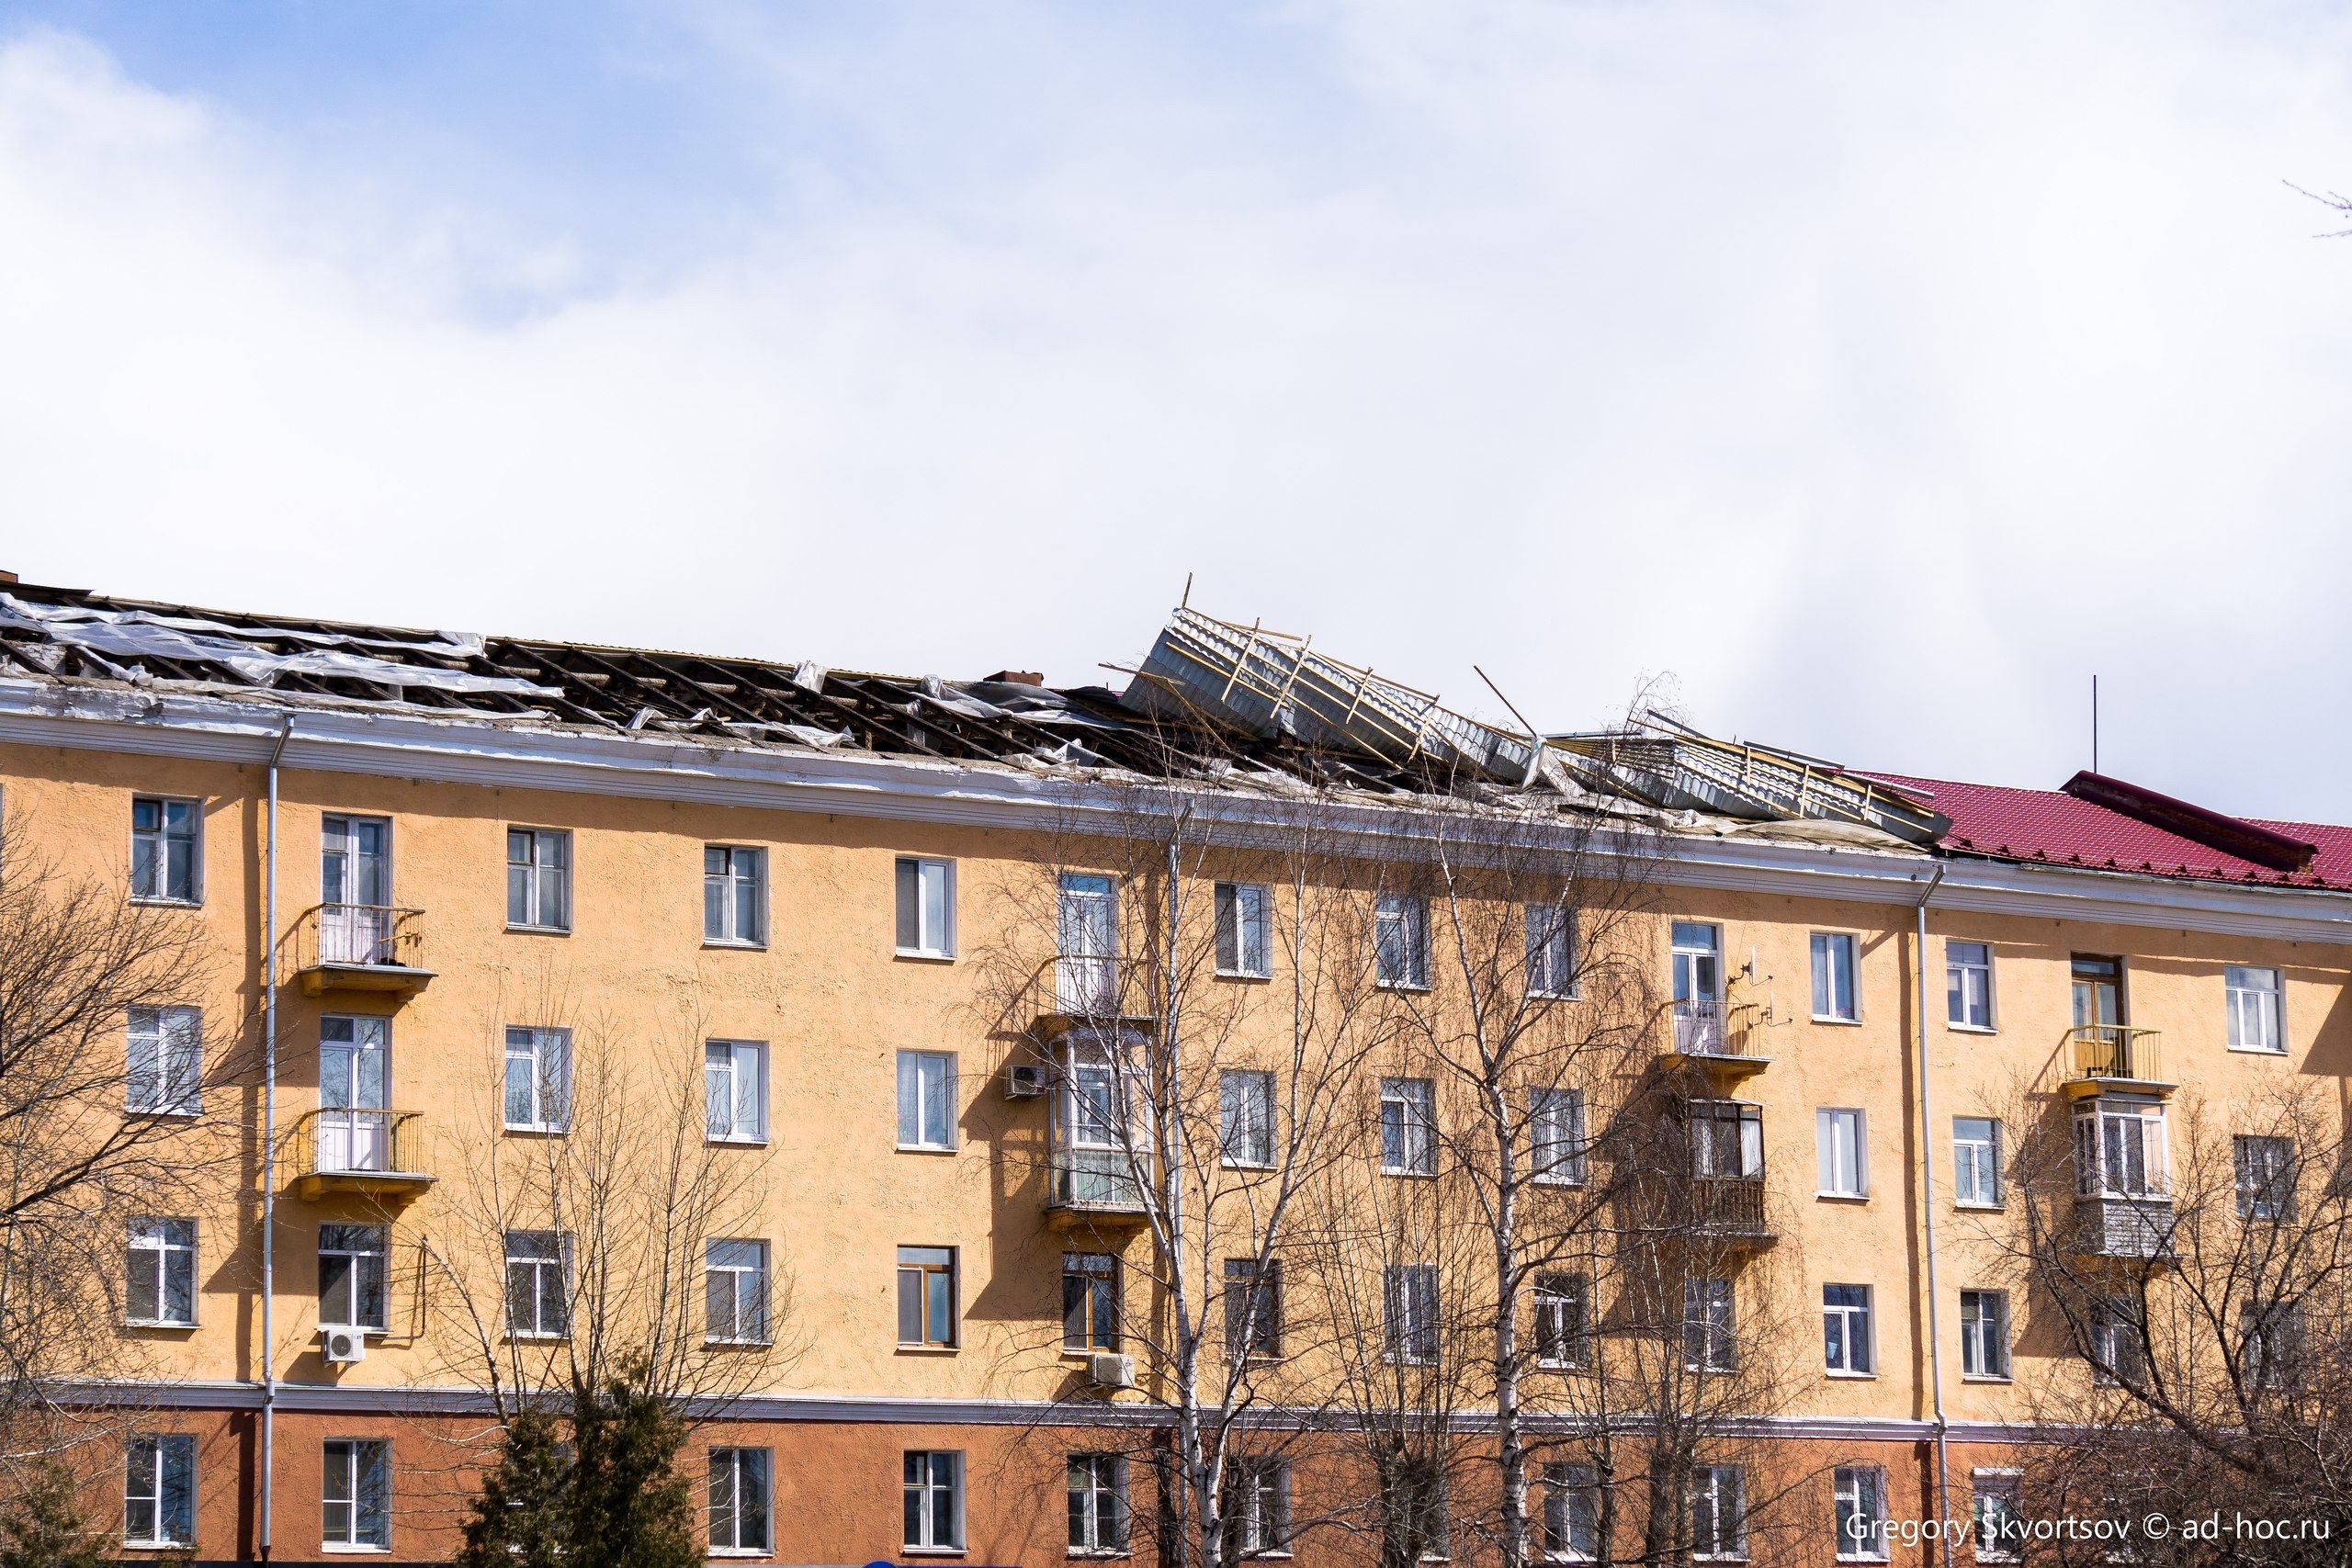 Сильный ветер сорвал крышу пятиэтажки в центре Перми